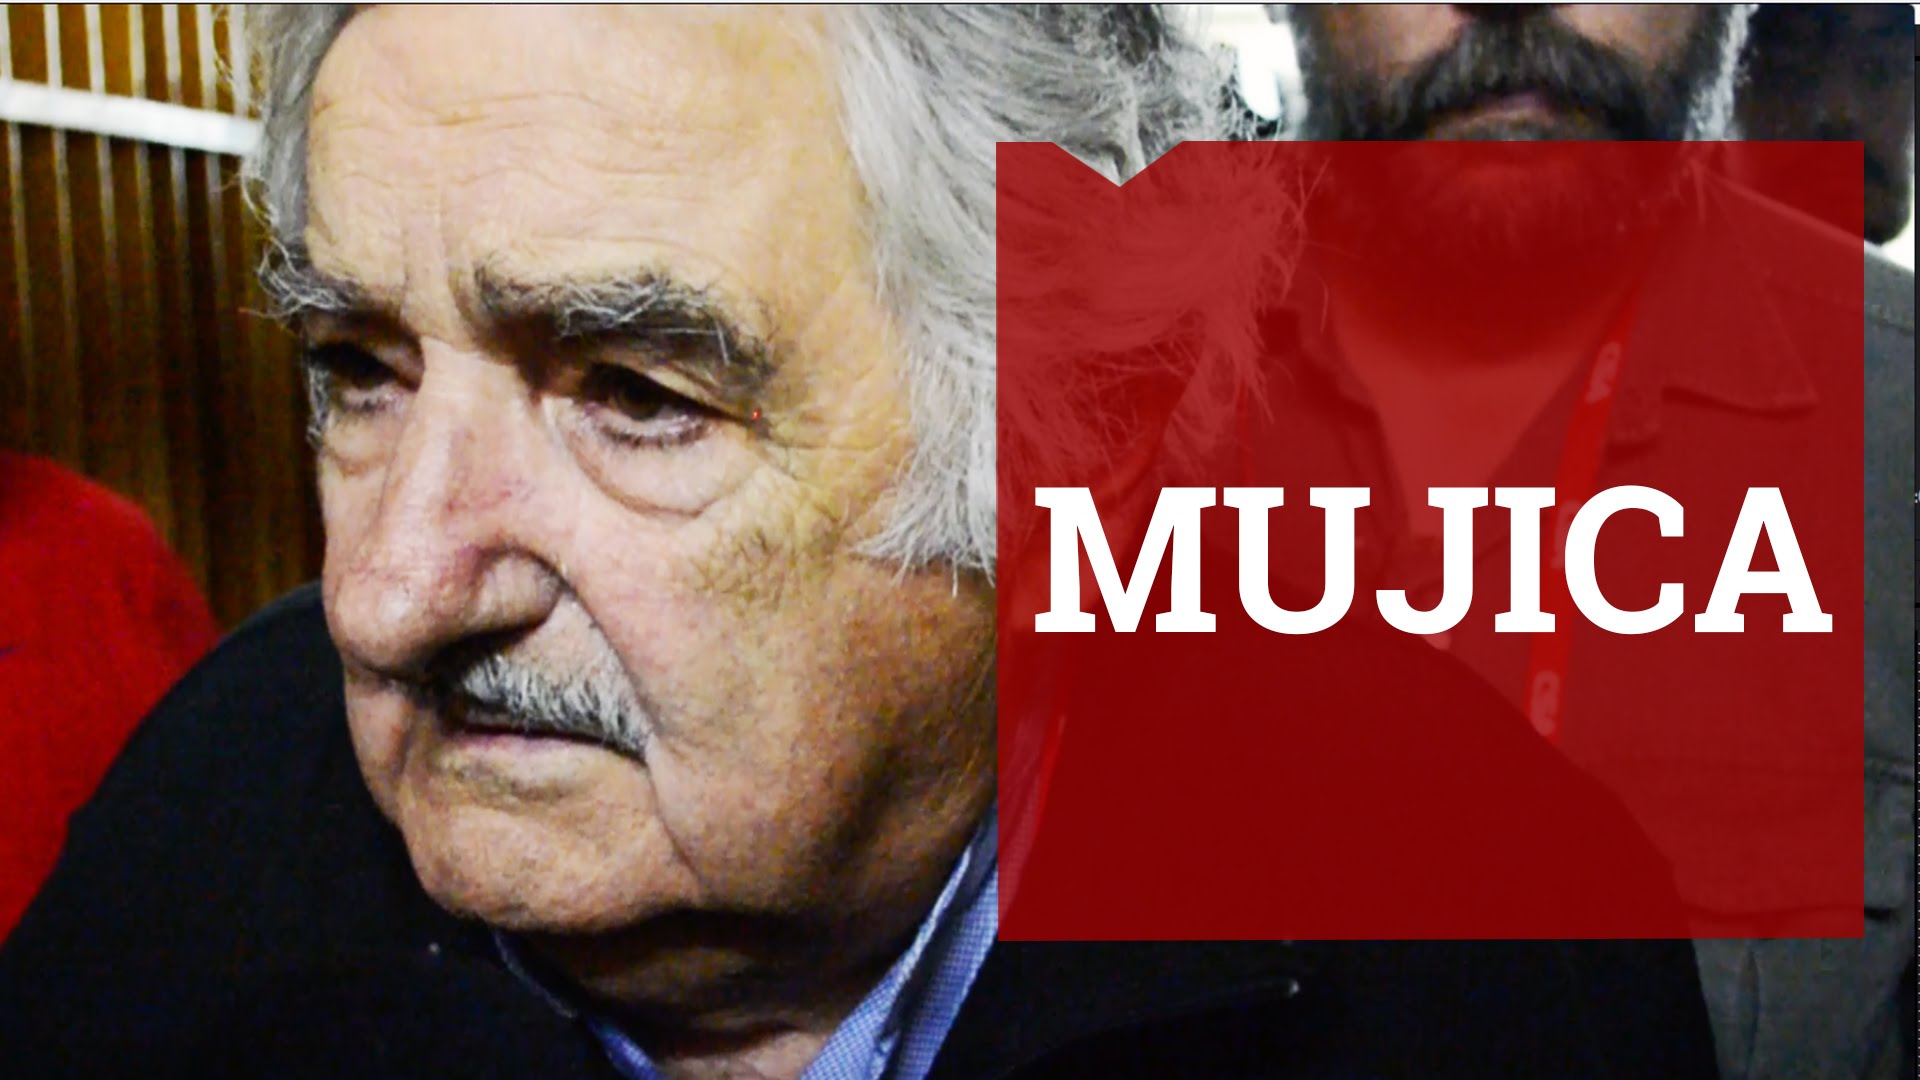 Mujica no Barão de Itararé